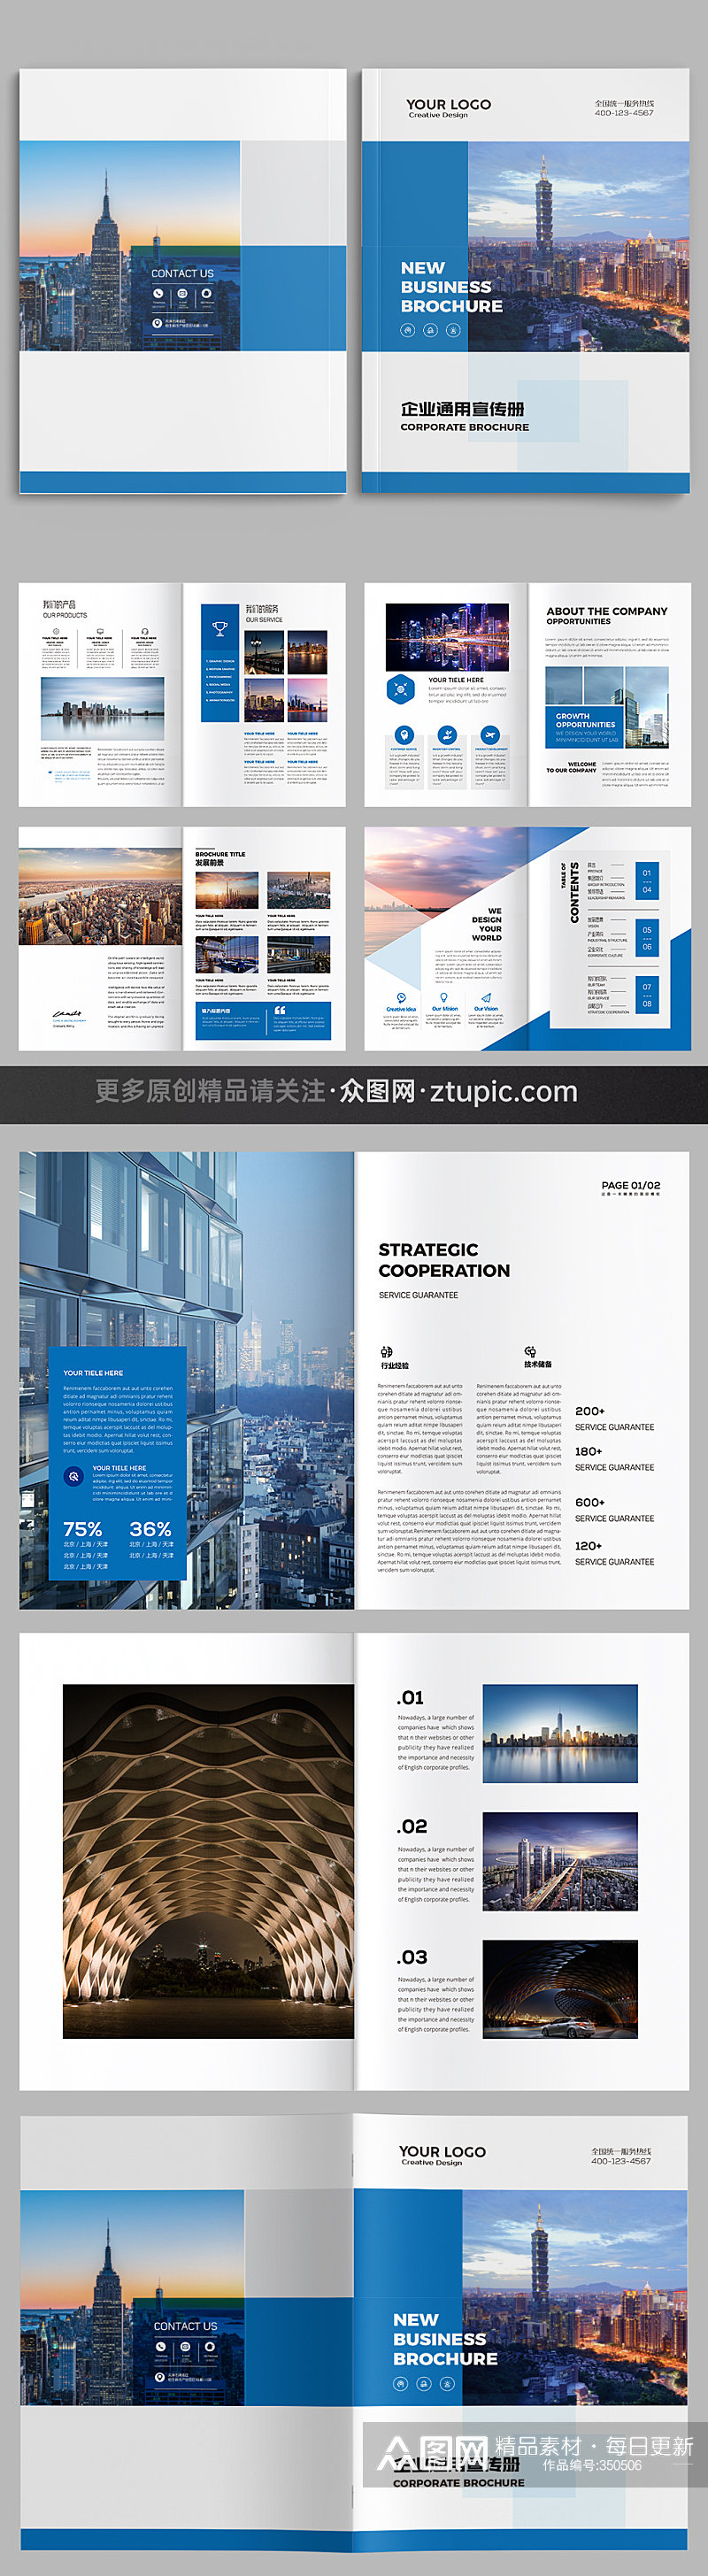 蓝色大气企业画册设计模板素材